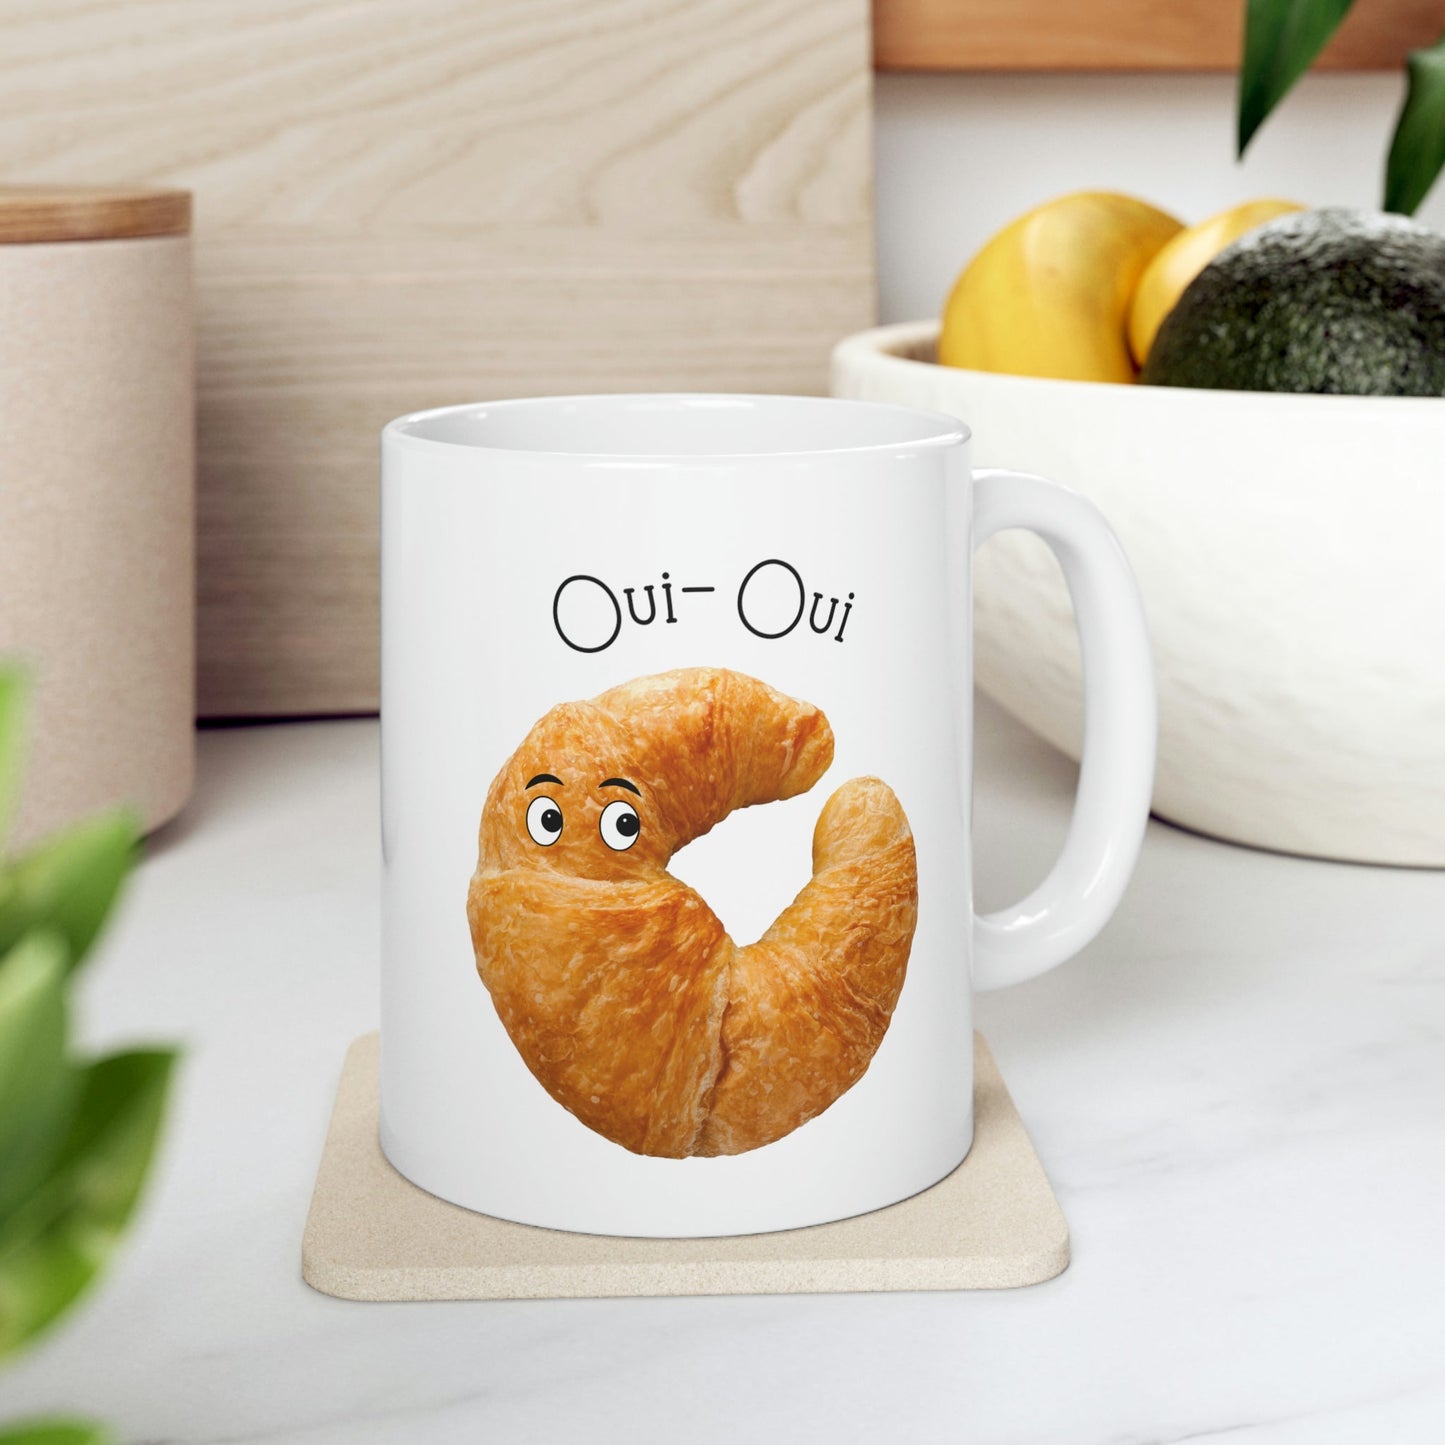 Oui Oui French Croissant Novelty Mug